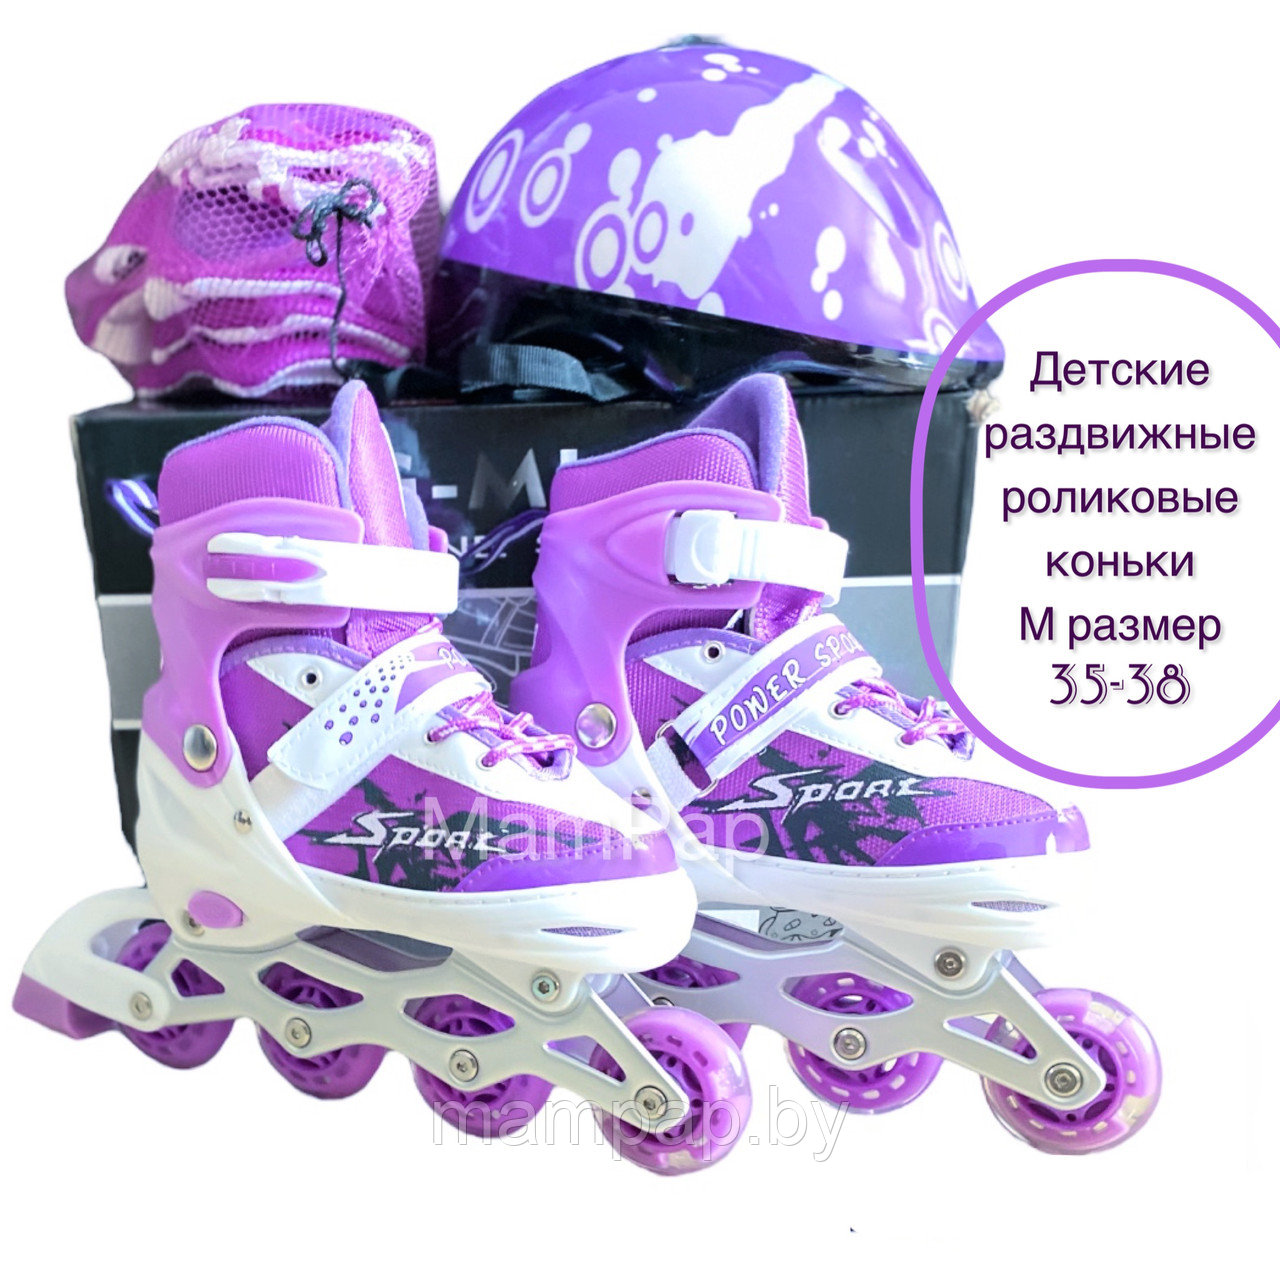 Детские роликовые коньки раздвижные + шлем + защита В ПОДАРОК, размер  М 35-38